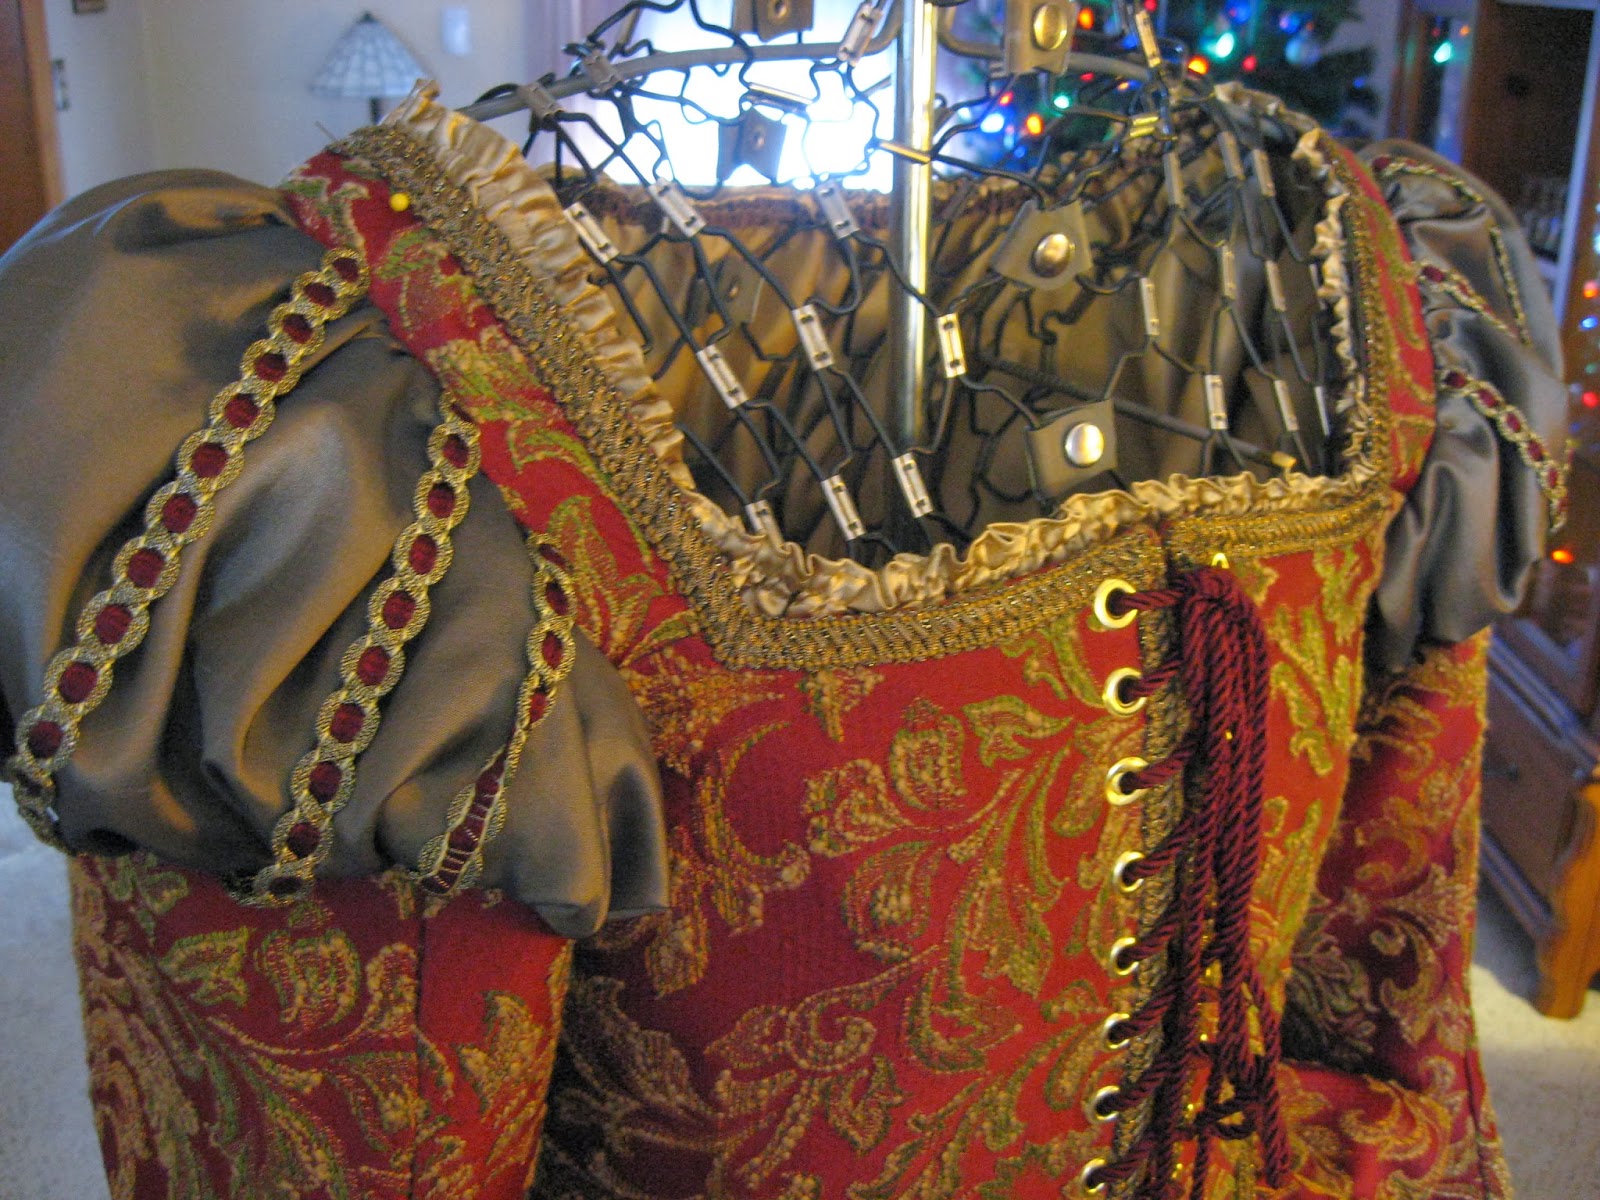 The Merry Dressmaker: Madrigal Dinner Costume